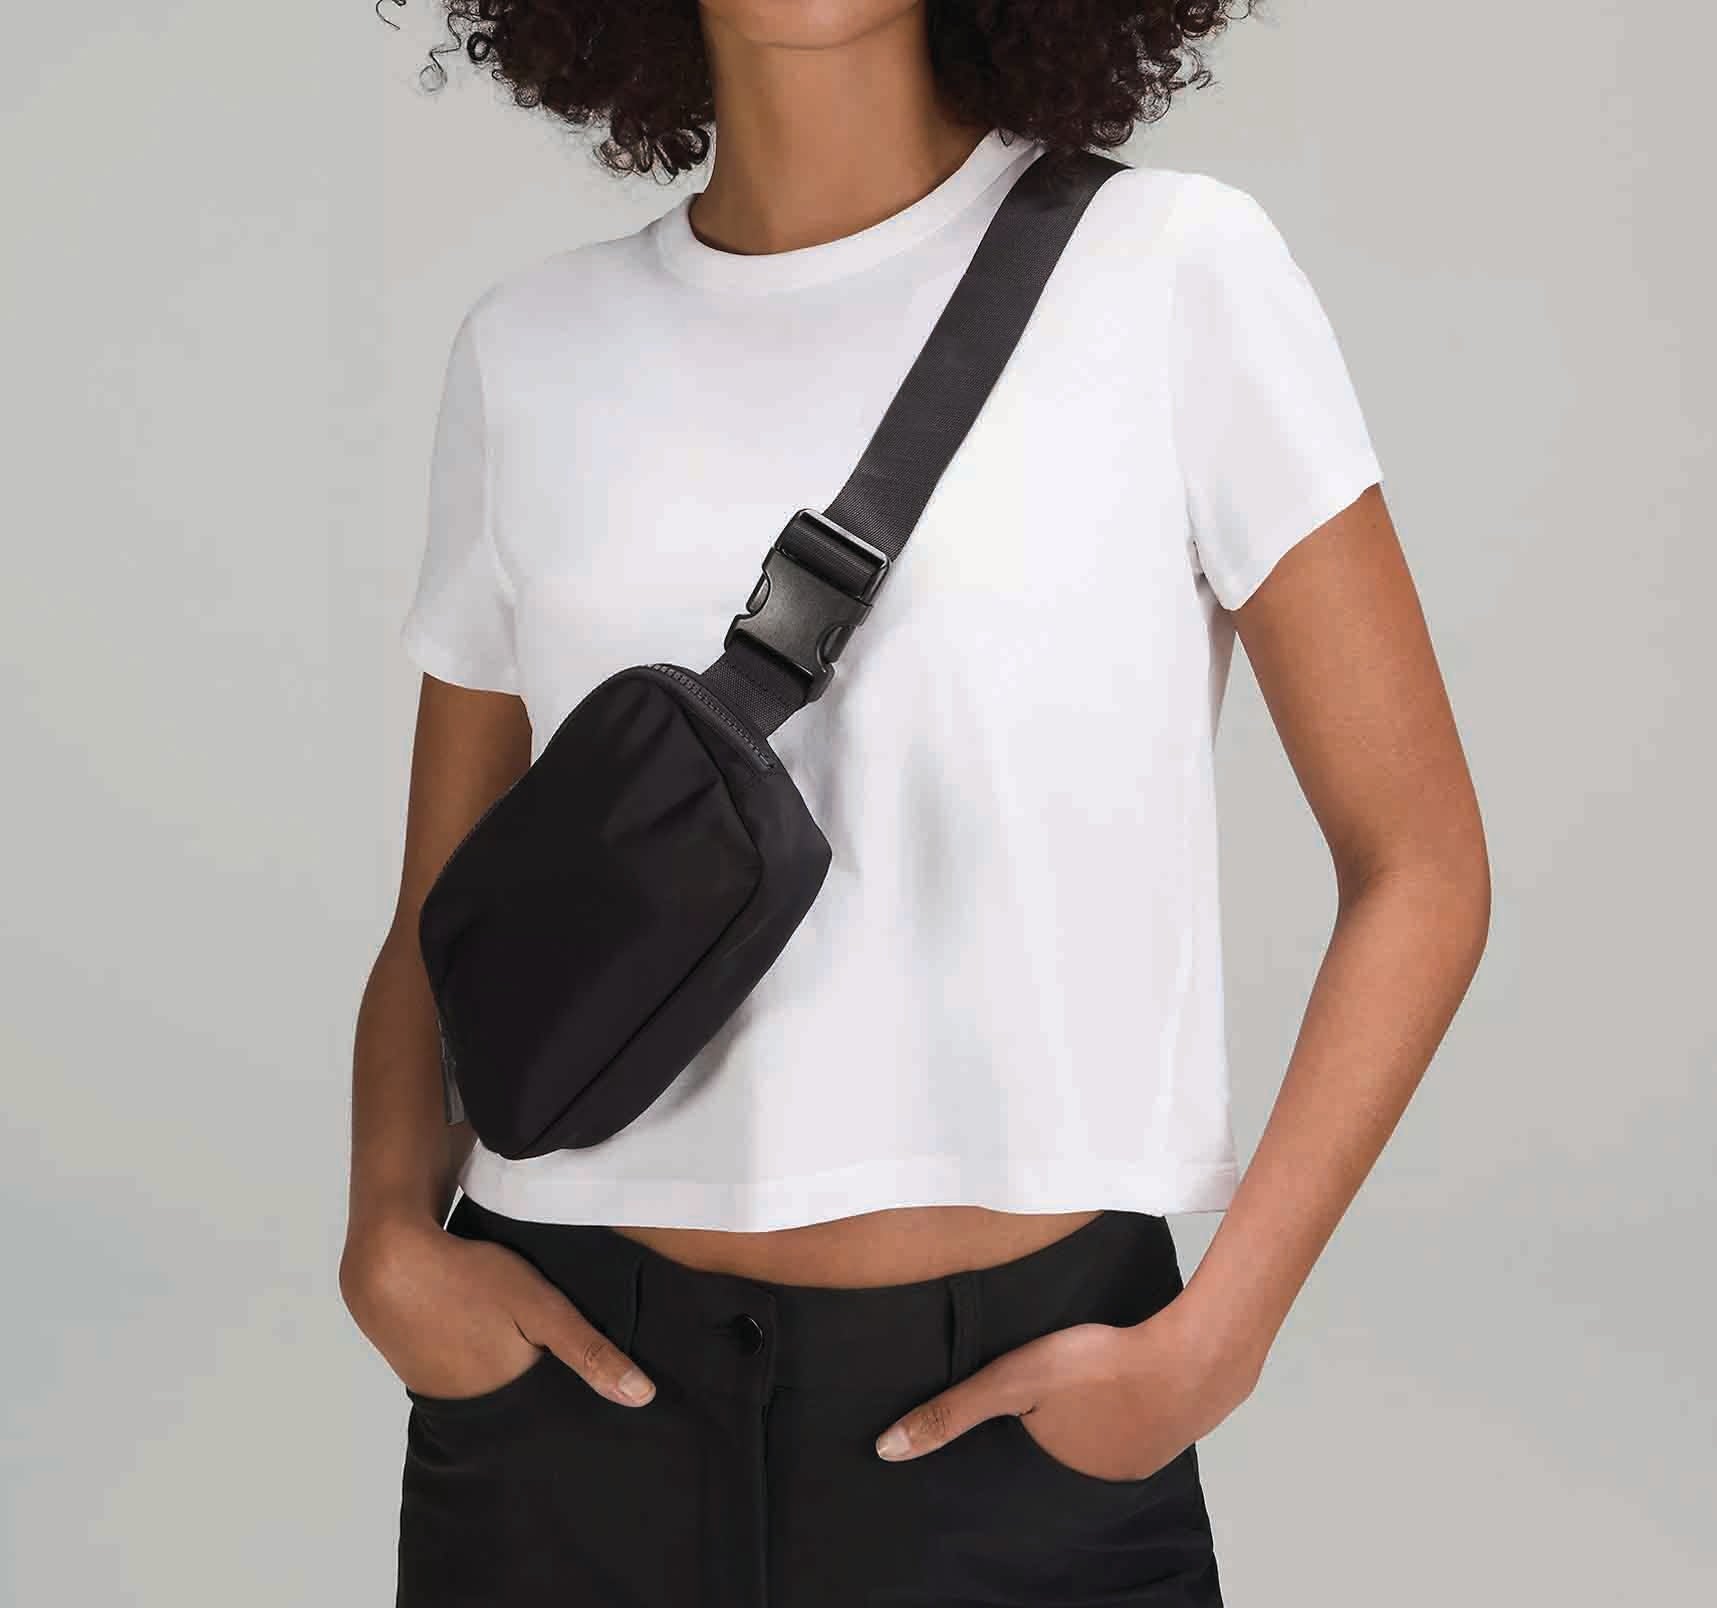 Lululemon Everywhere Belt Bag Crossbody Bag Black in Waterproof